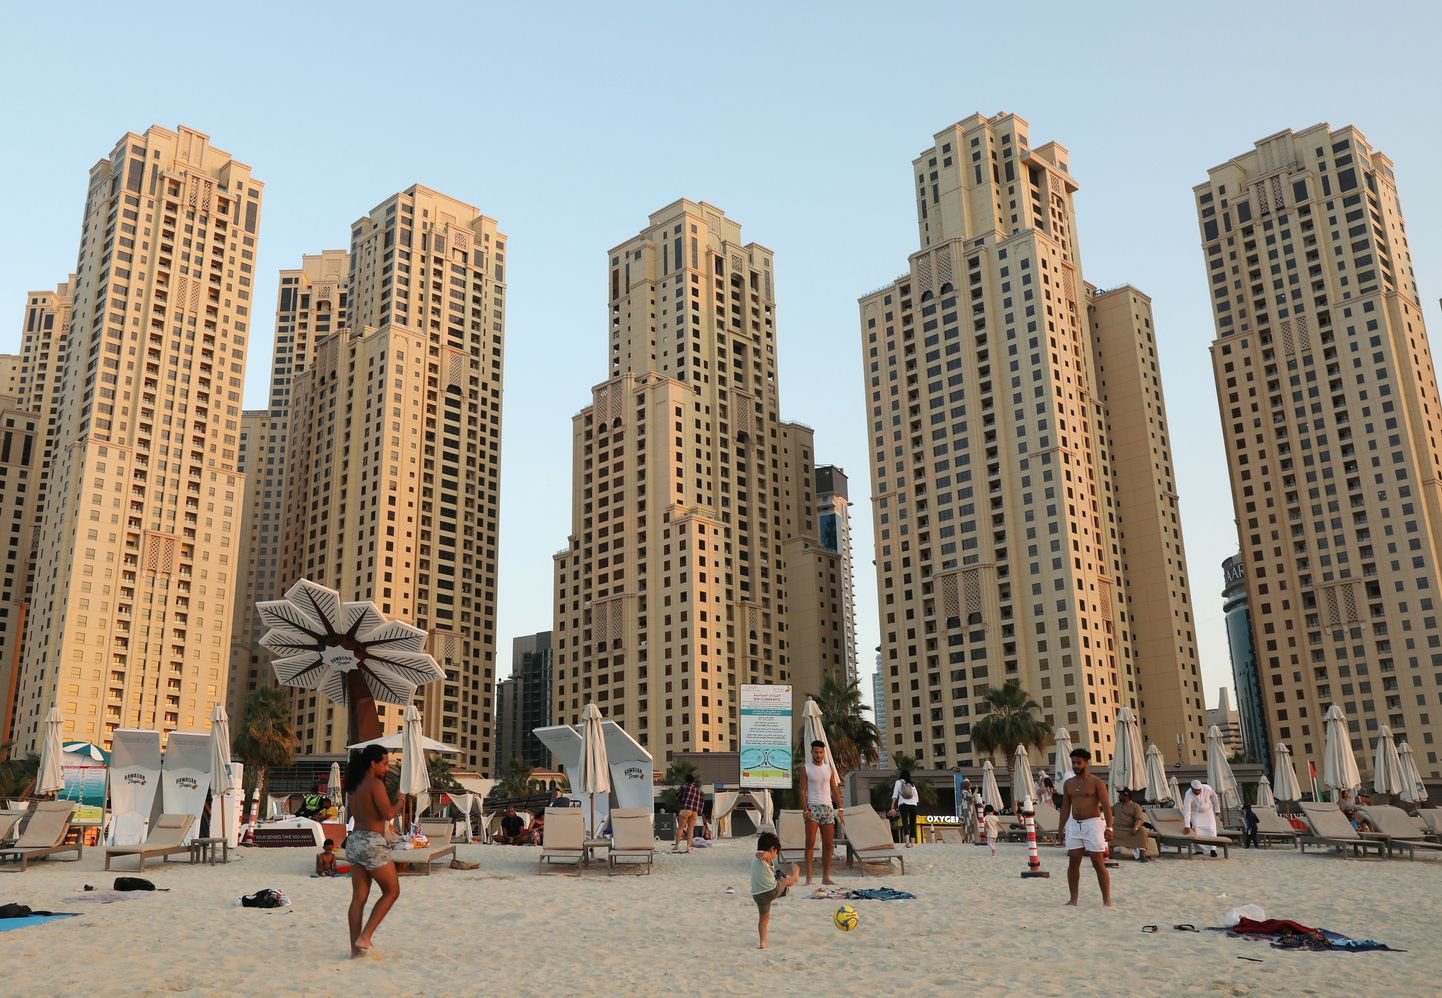 Пляж в Дубае заманчив, но надо быть готовым к неожиданностям.